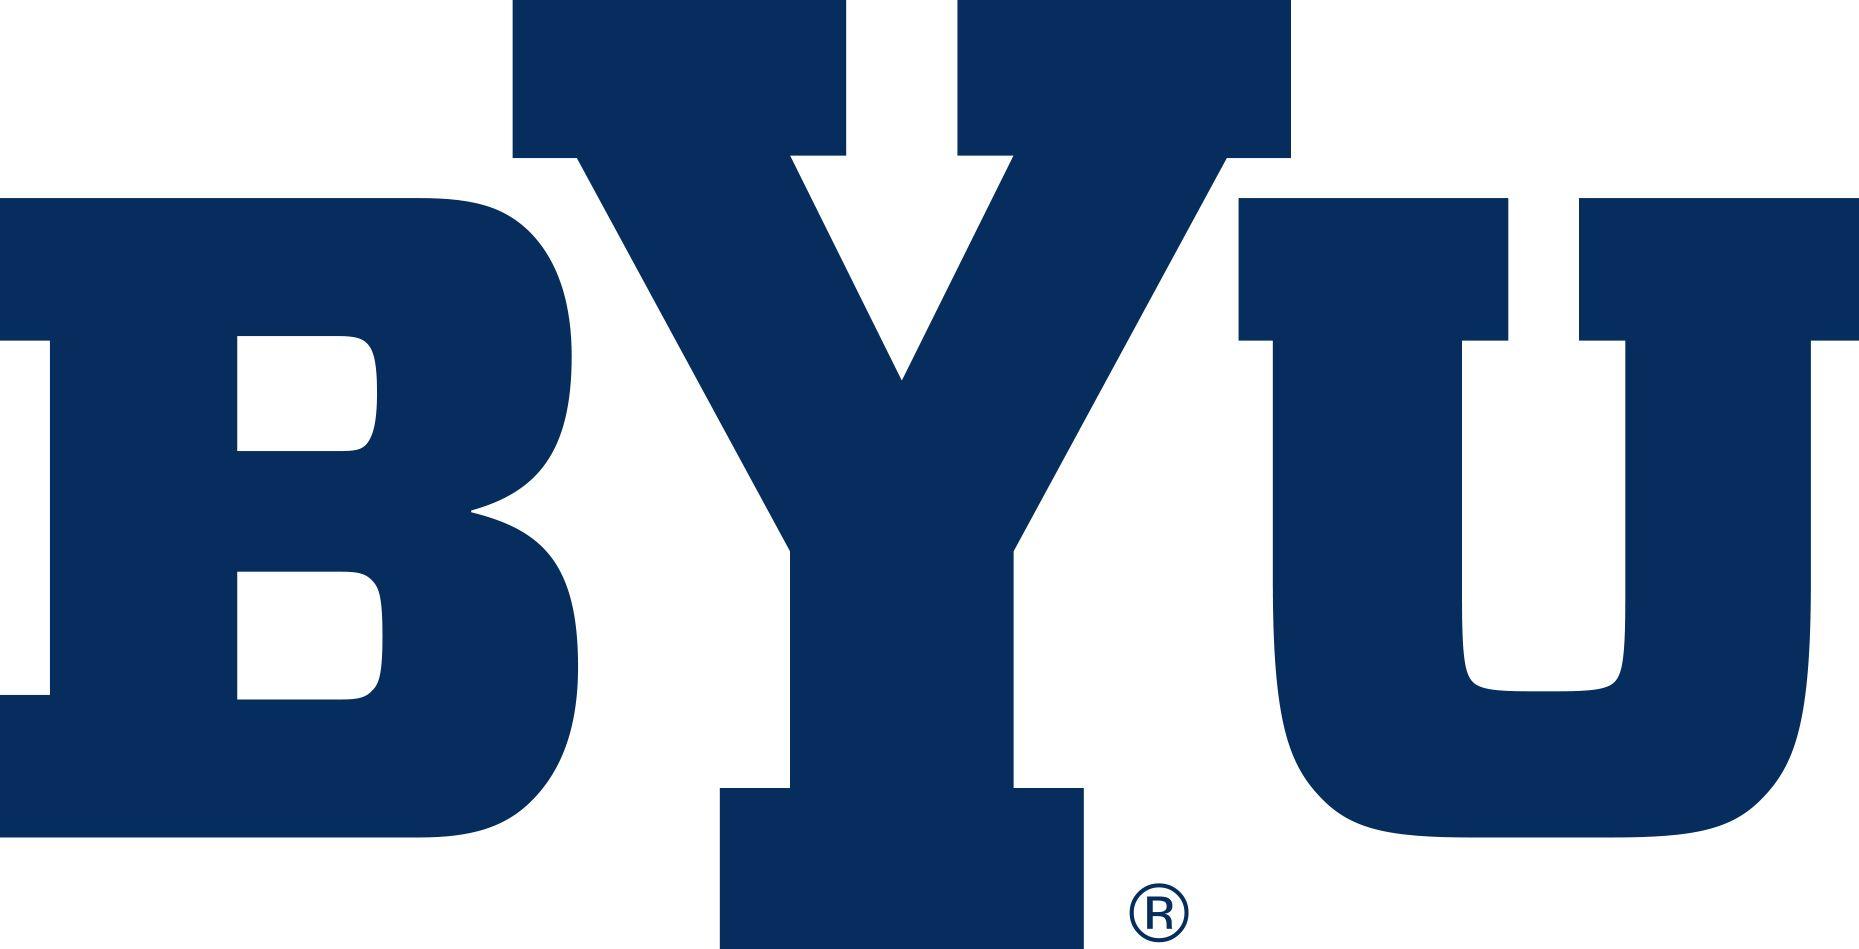 BYU Y Logo - BYU financial service shutdown result of security breach? - The ...